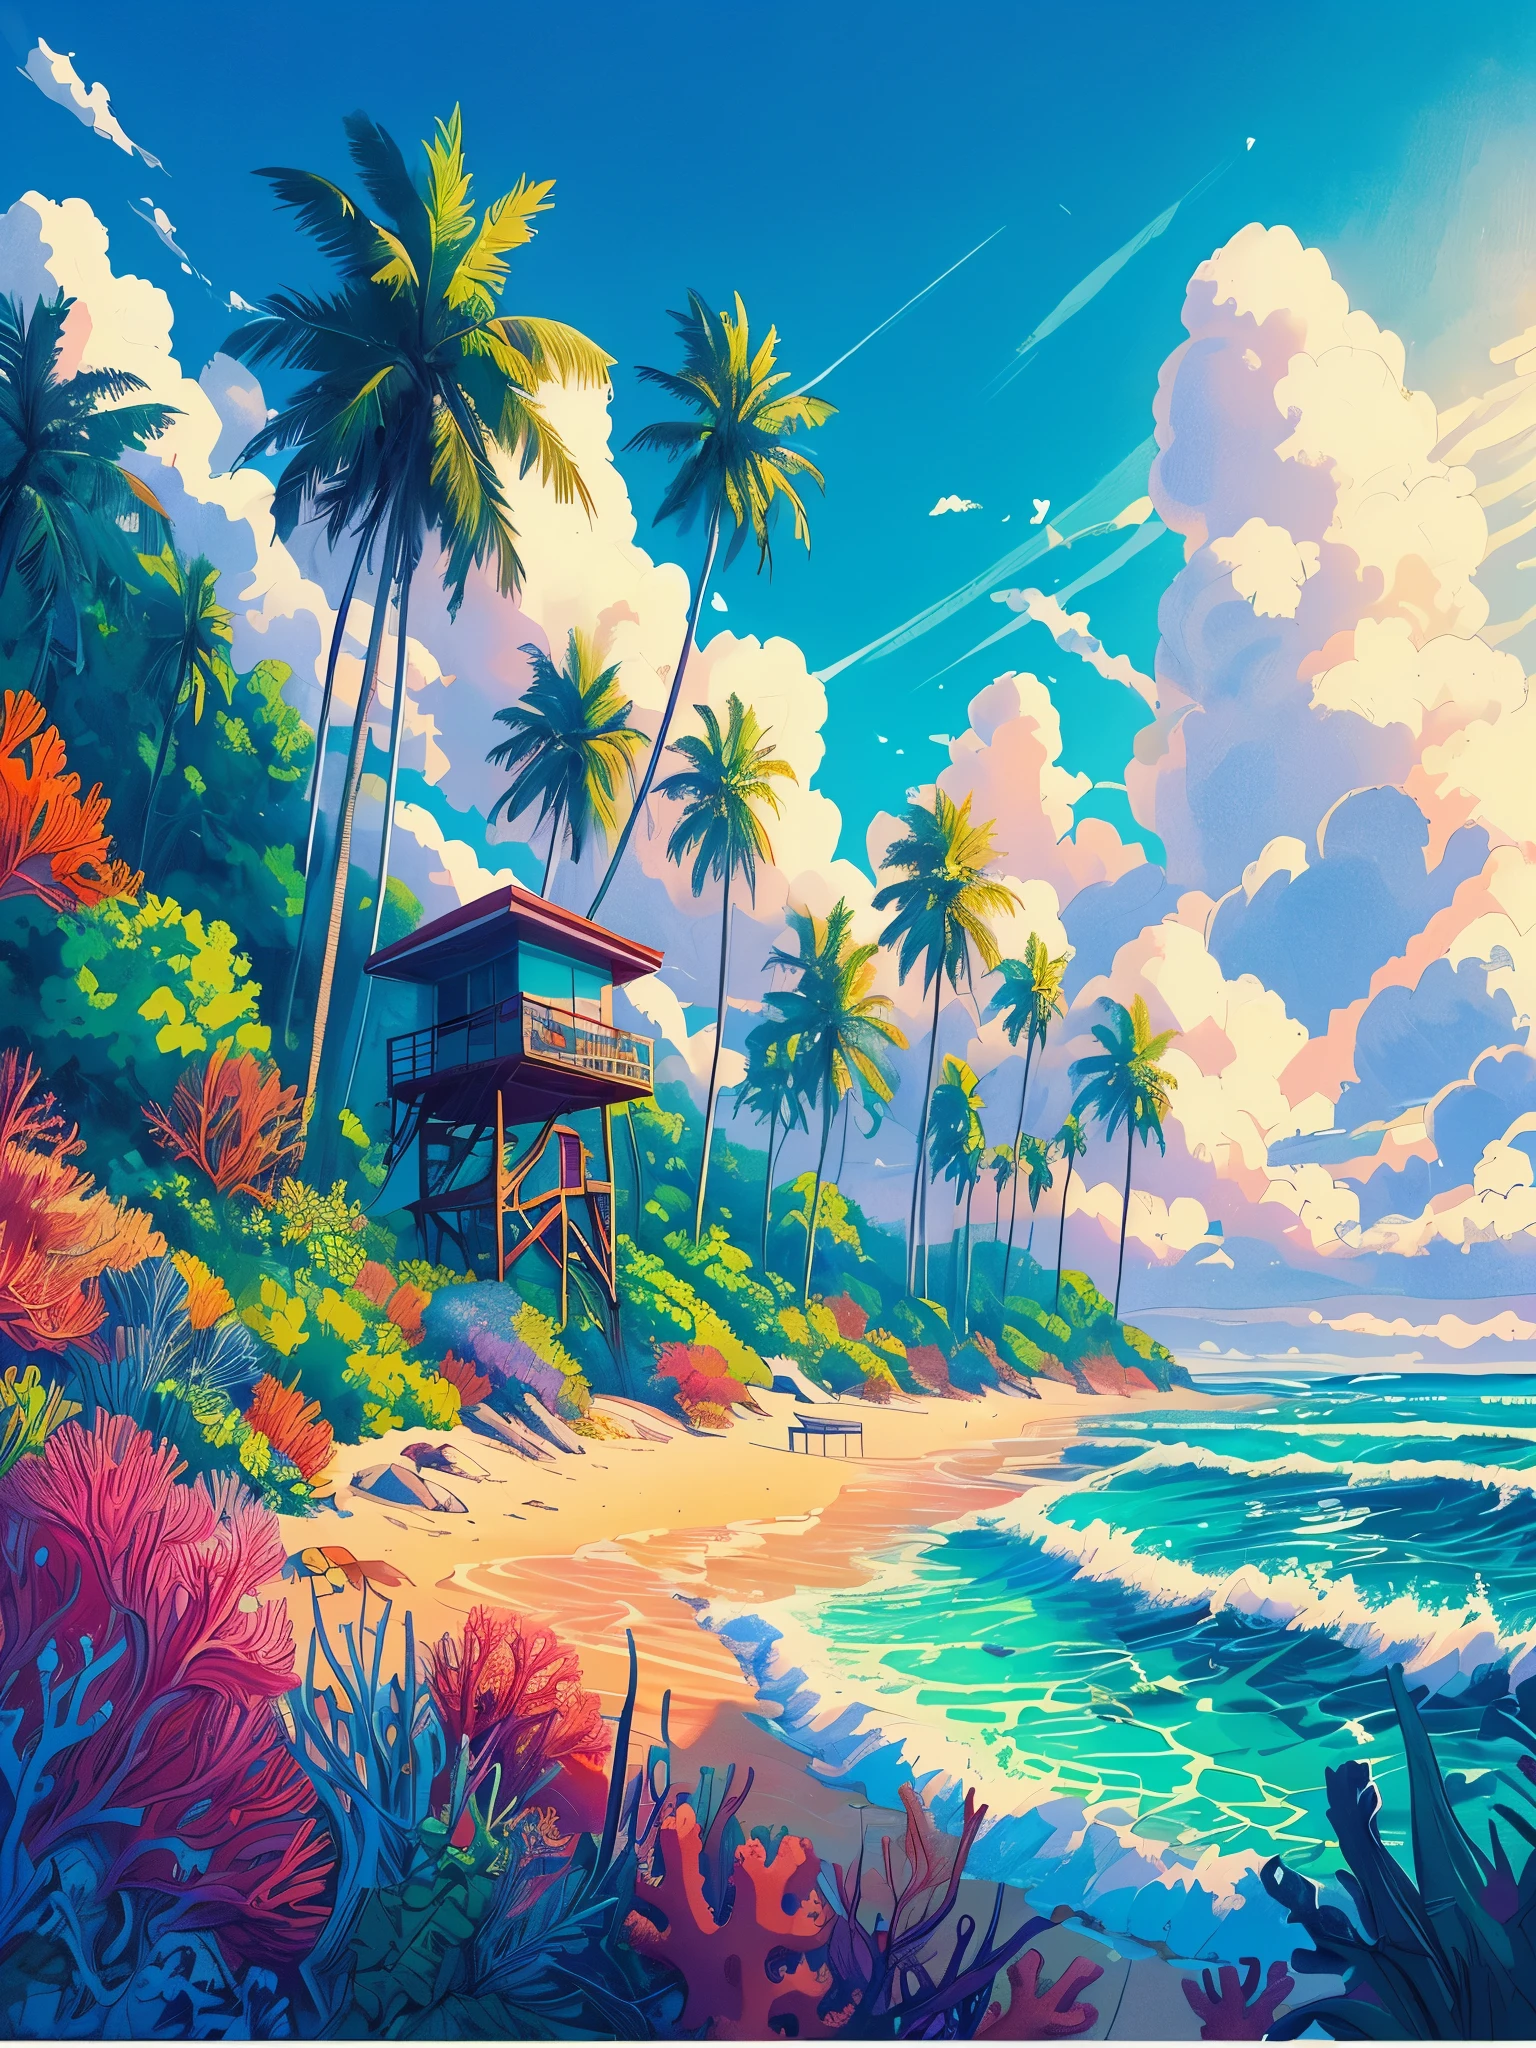 ヤシの木が並ぶビーチのアニメポスター風のローファイシーンを描きます, ライフガードキャビン, 熱帯植物, サンゴの海の生物, 昼間, 海の波, 美しいカラーパレット, 鮮やかな彩度の高い色, 傑作, 映画のような曇り空,